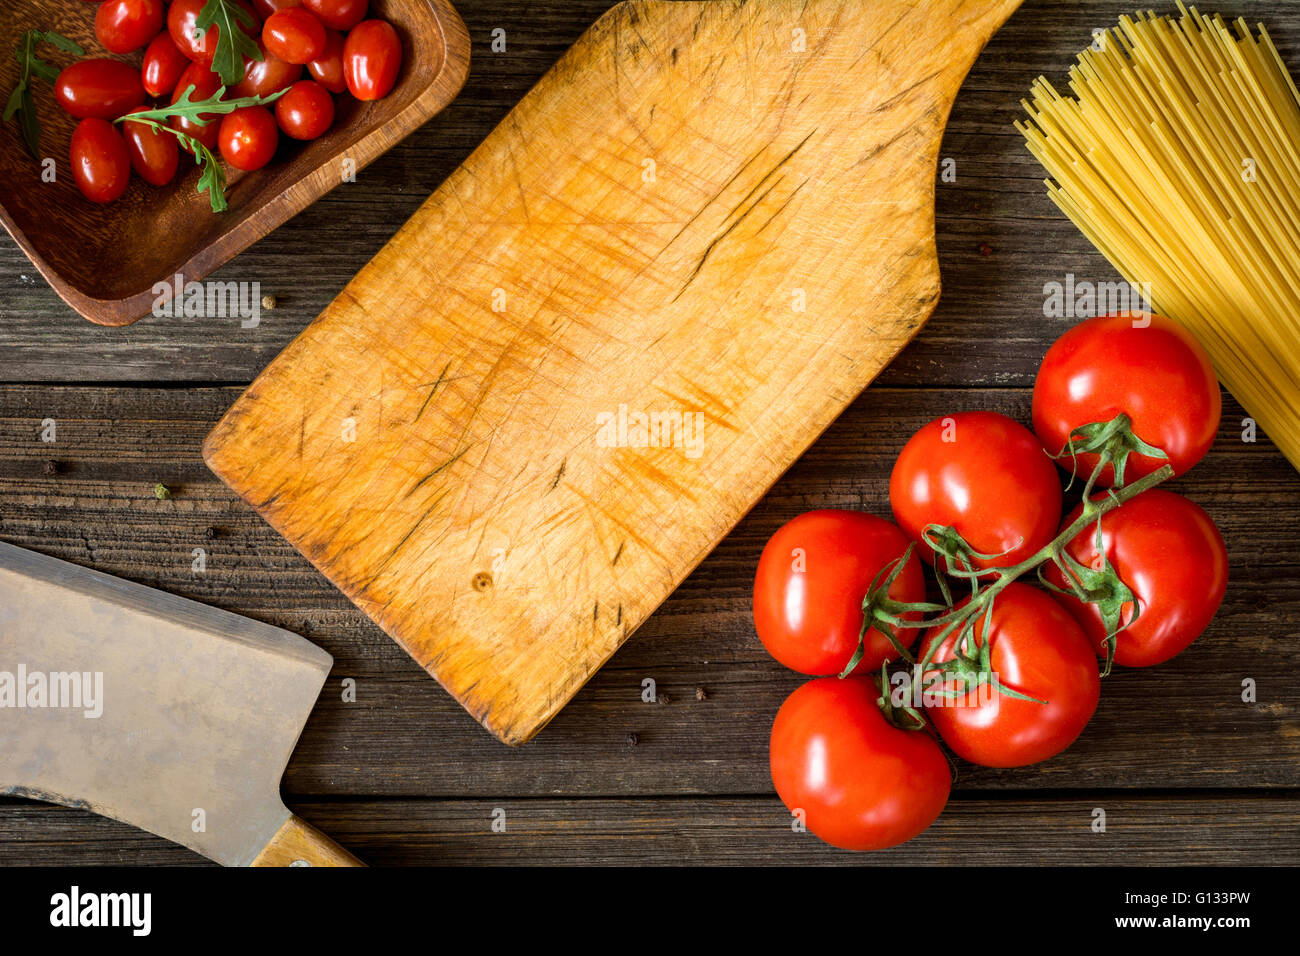 Vue de dessus de la nourriture de la cuisine italienne ingrédients sur toile rustique en bois. Les pâtes spaghetti, tomates, huile d'olive et salade de roquette Banque D'Images